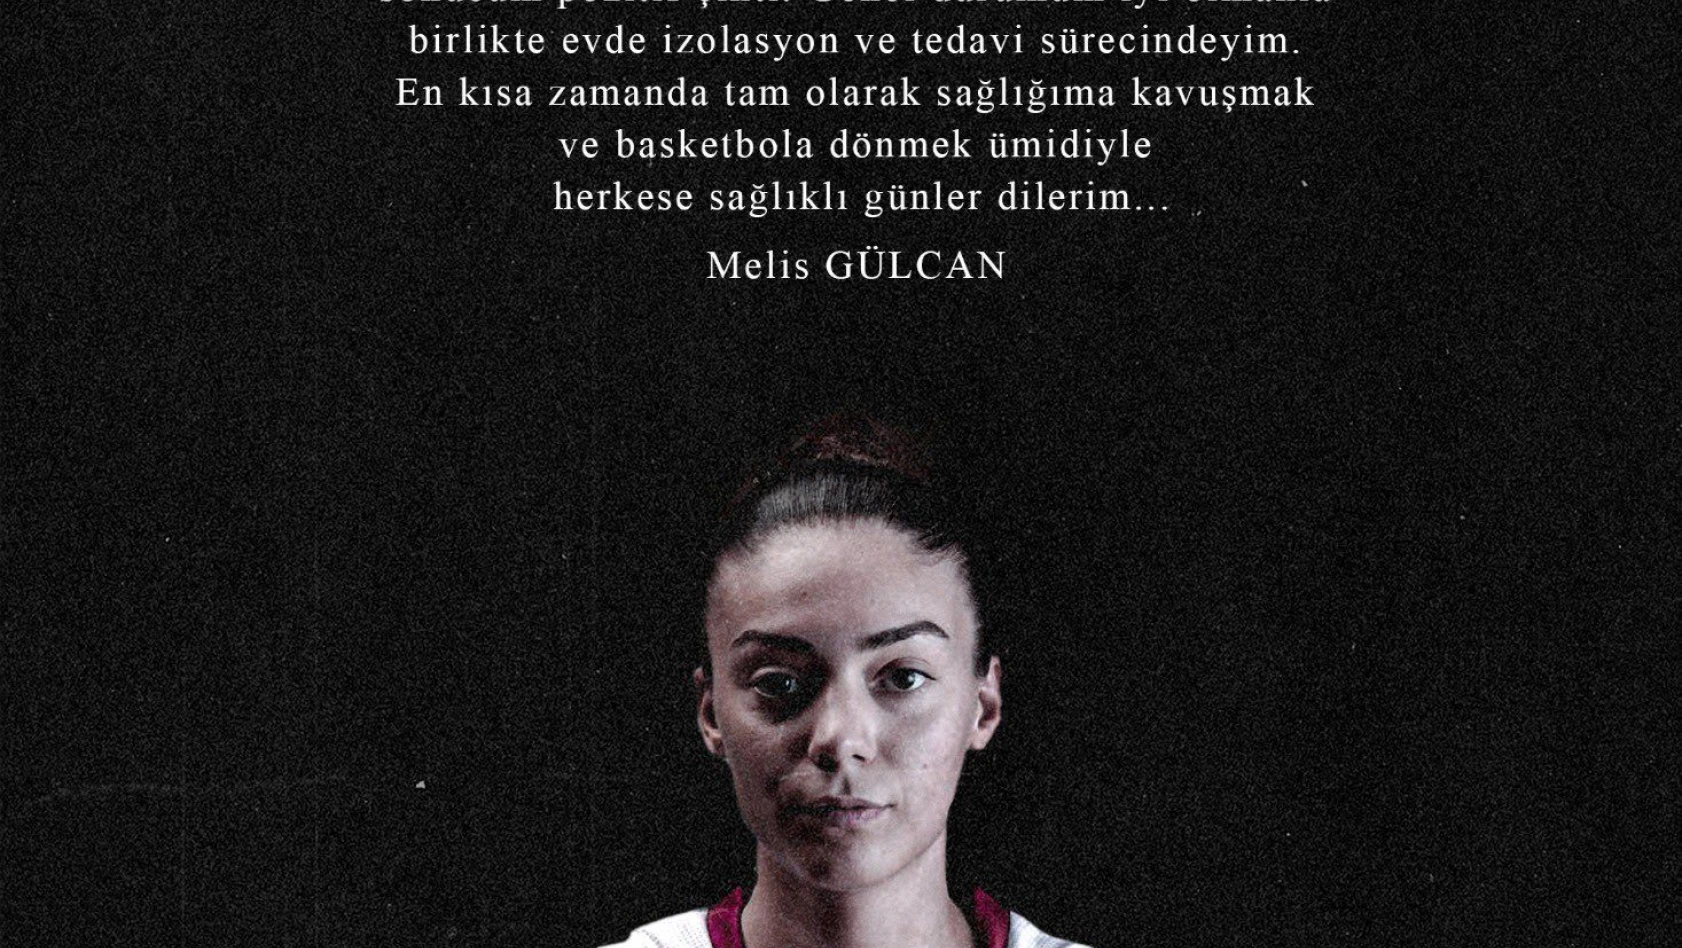 Kayseri Basketbol'da koronavirüse yakalanan Melis Gülcan'dan 'iyiyim' mesajı